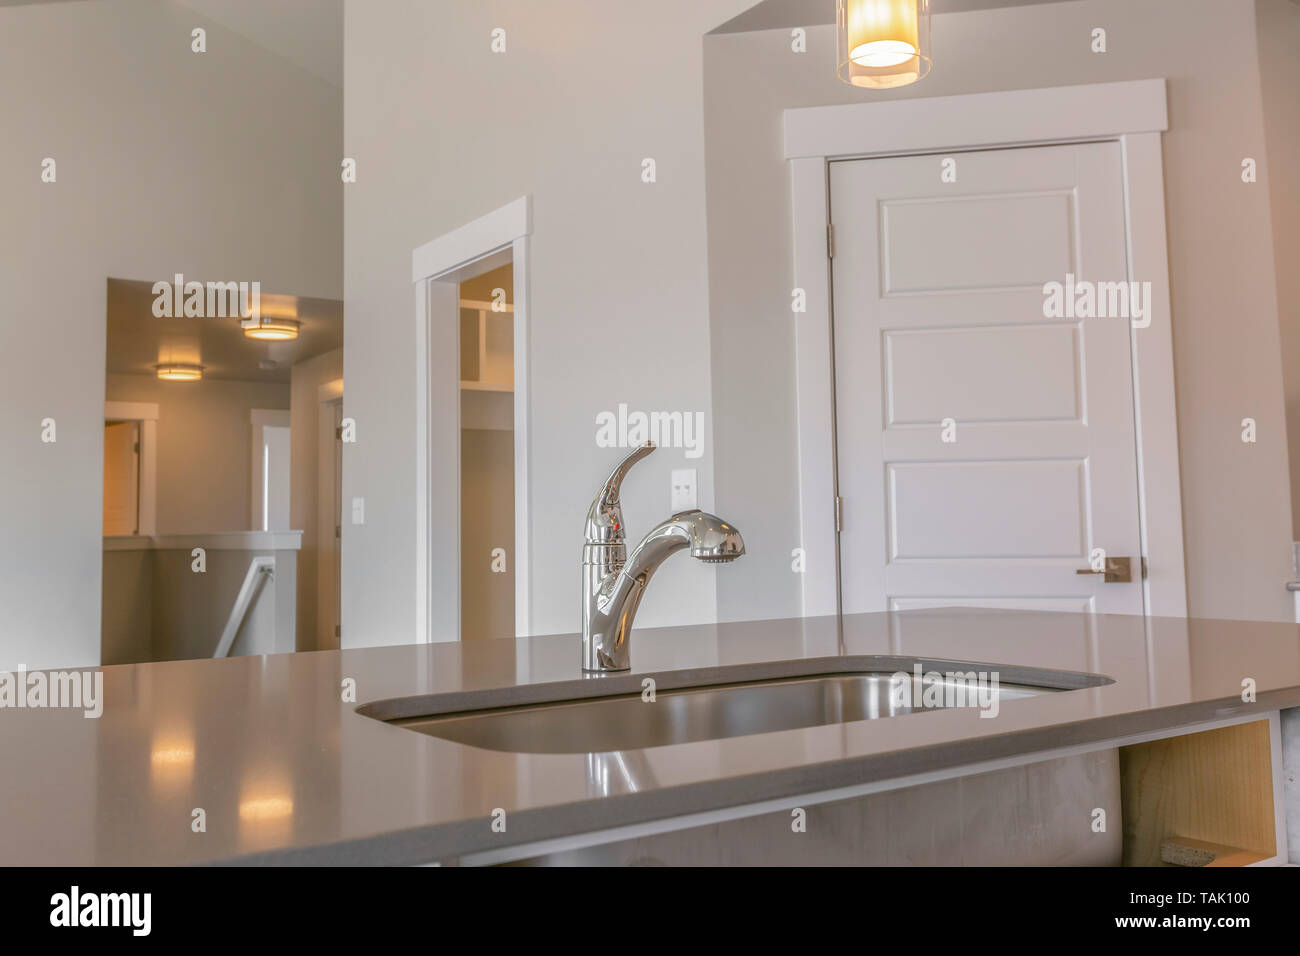 Nahaufnahme der saubere und glänzende Spüle in der Küche des neuen Hauses. Mehrere Türen, die zu verschiedenen Räumen kann im Hintergrund gesehen werden. Stockfoto